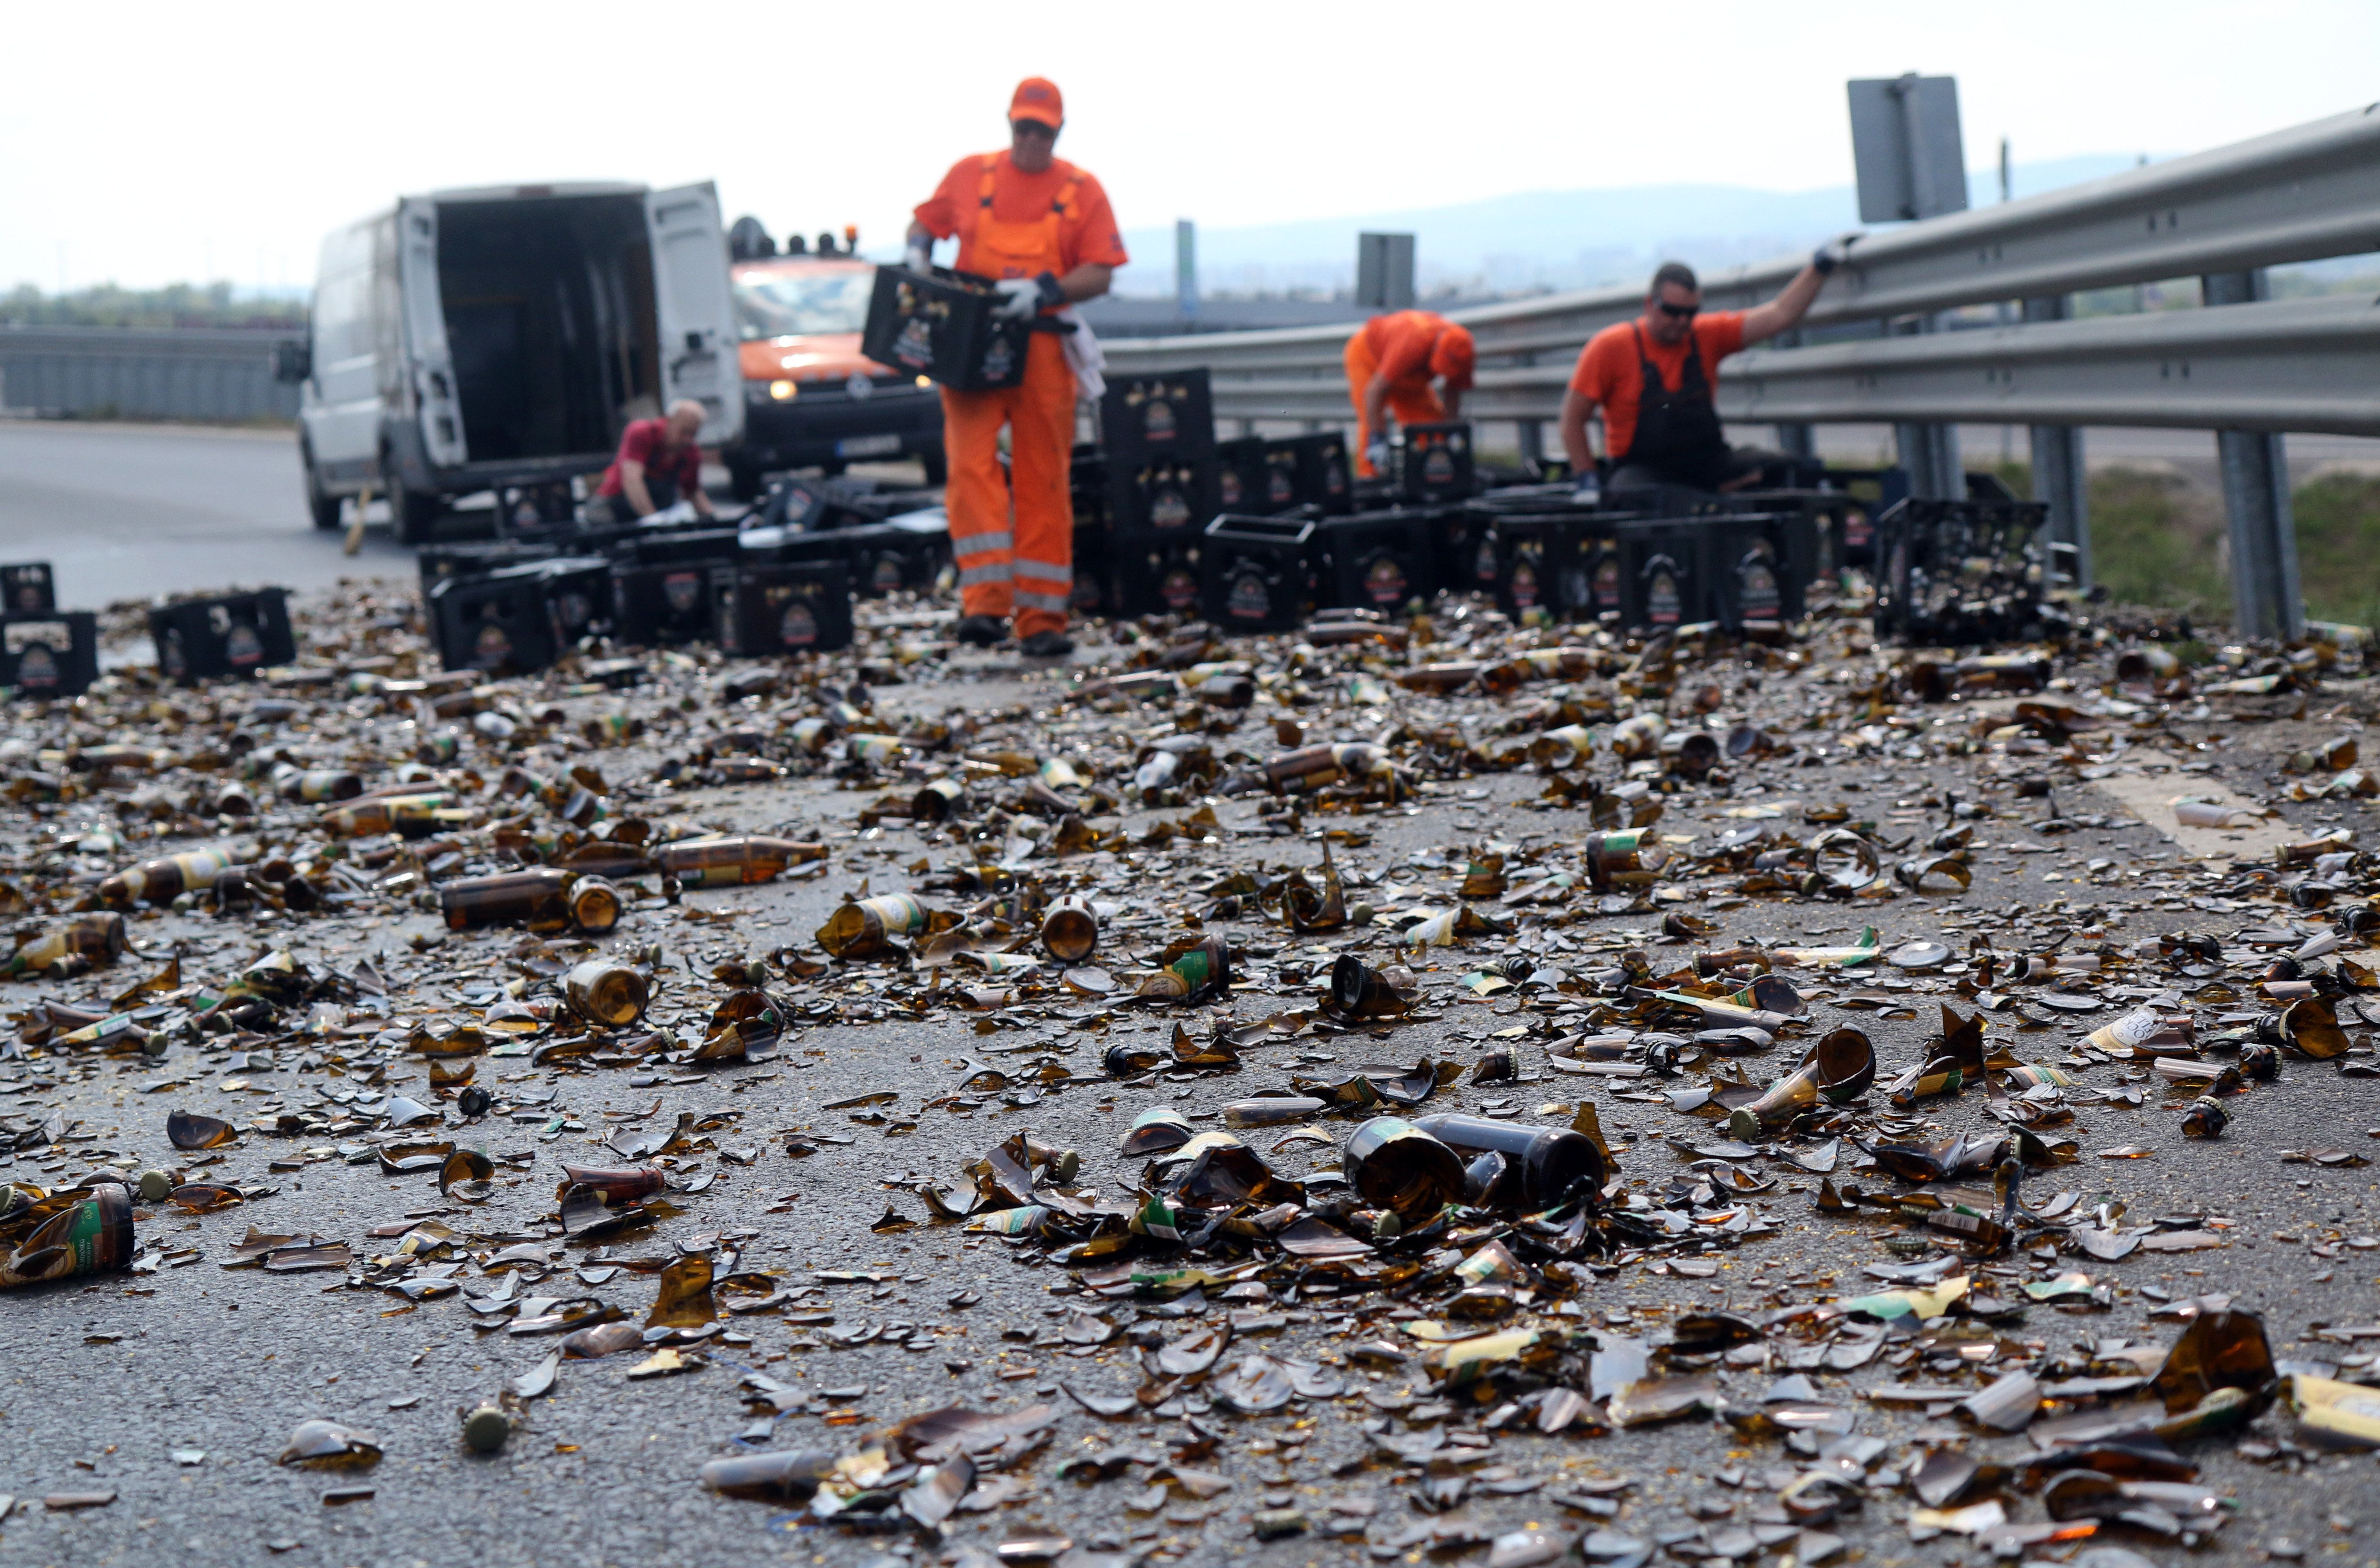 Egy teherautóról az úttestre esett és összetört sörösüvegeket takarítják el az M30-as autópálya lehajtóján Miskolc határában 2020. május 18-án. A kanyarban a teherautó rakományának egy része az úttestre borult. MTI/Vajda János